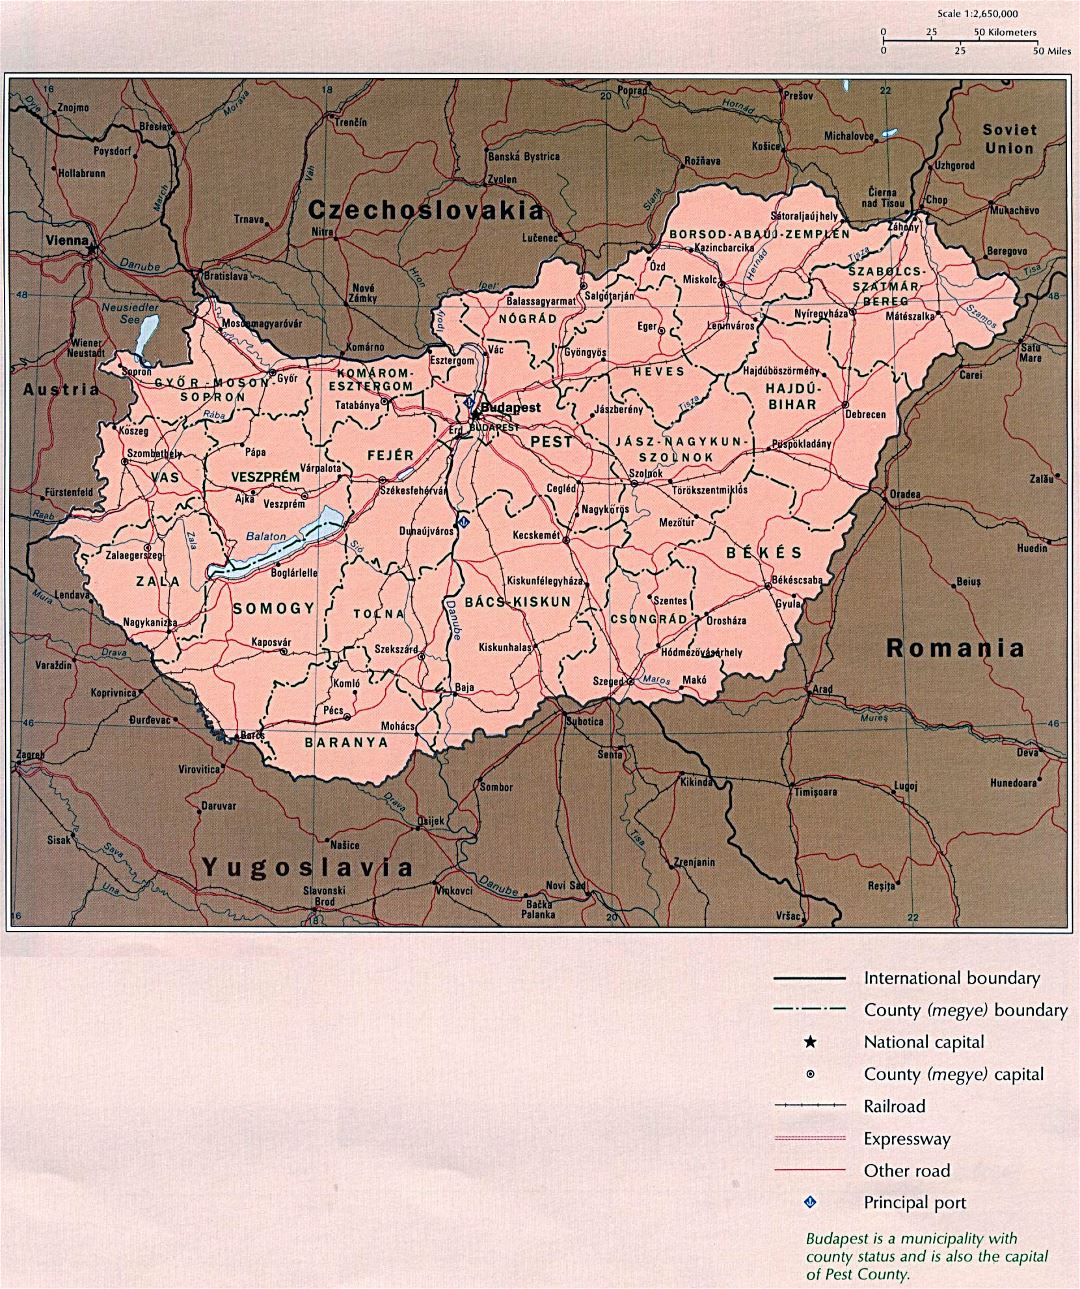 Mapa político y administrativo detallada grande de Hungría con las carreteras y ciudades principales